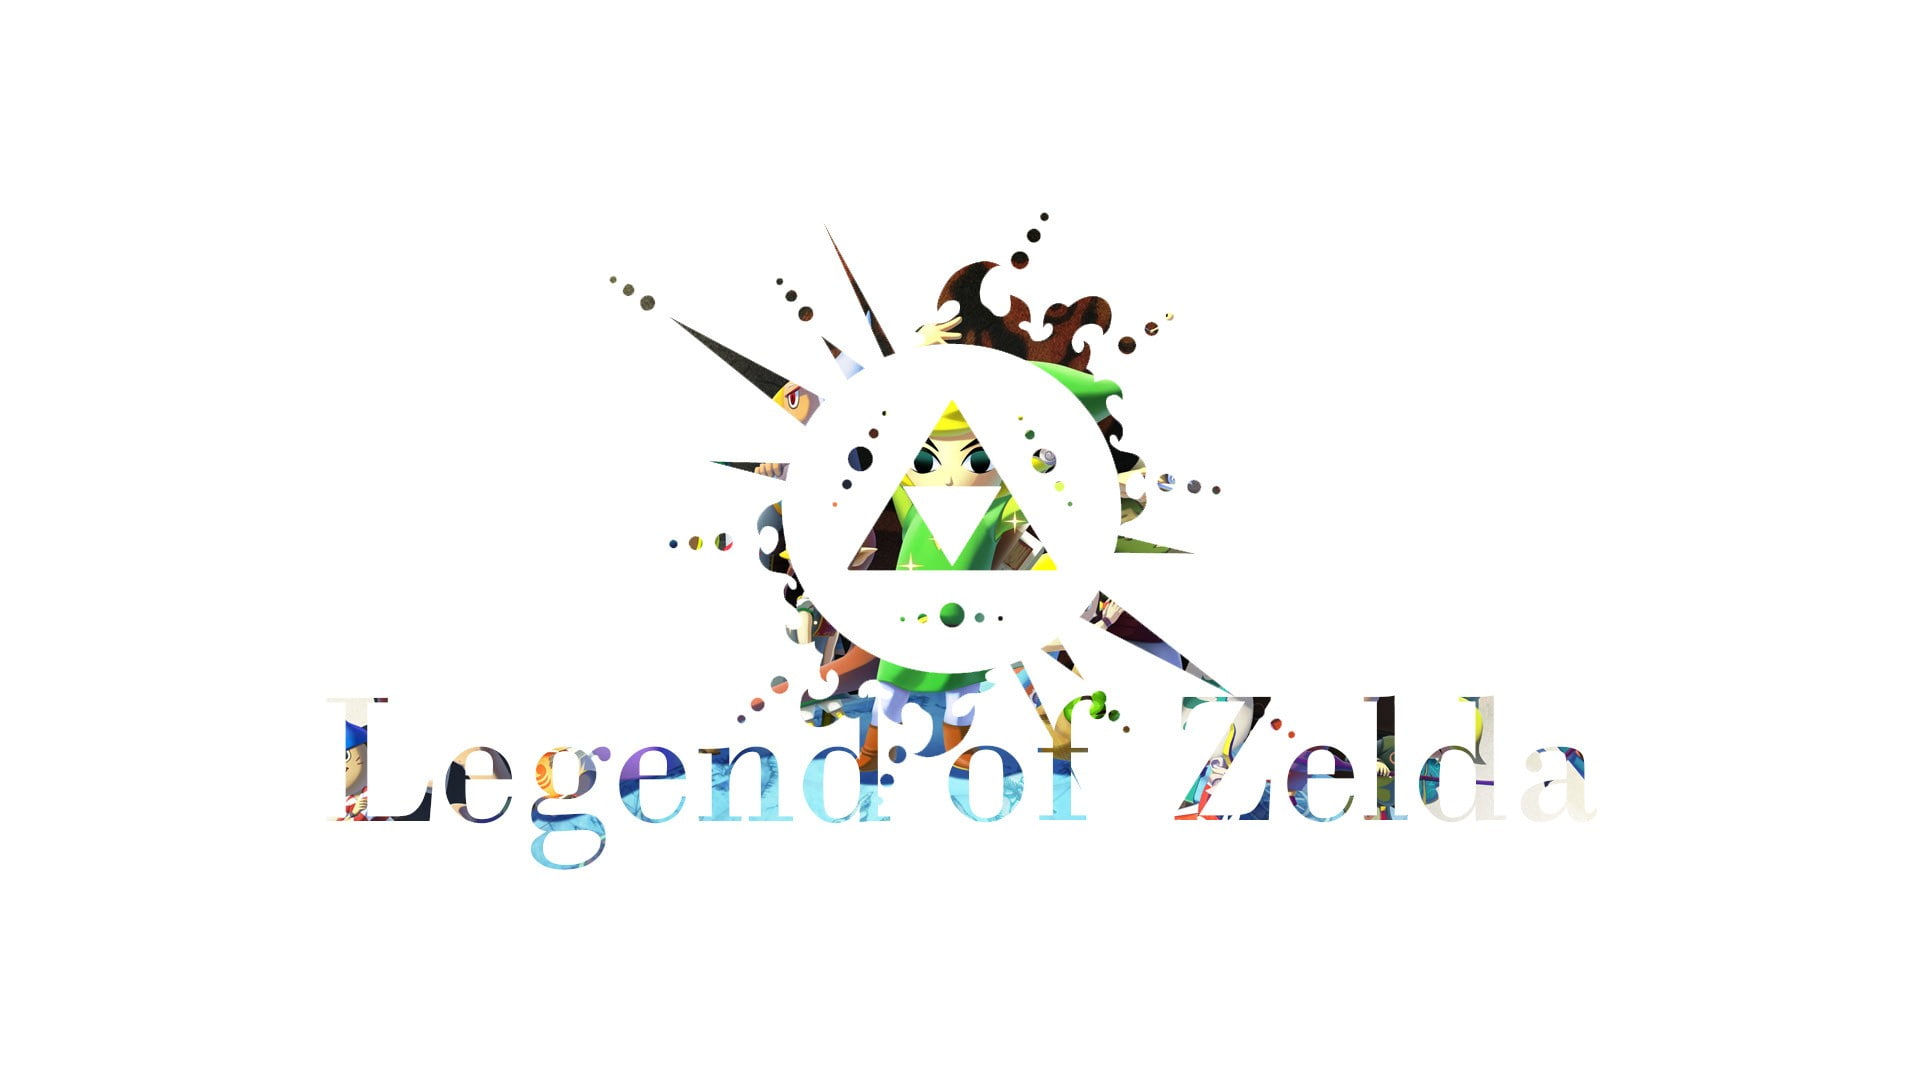 video games, text, The Legend of Zelda, Link, The Legend of Zelda: Wind Waker